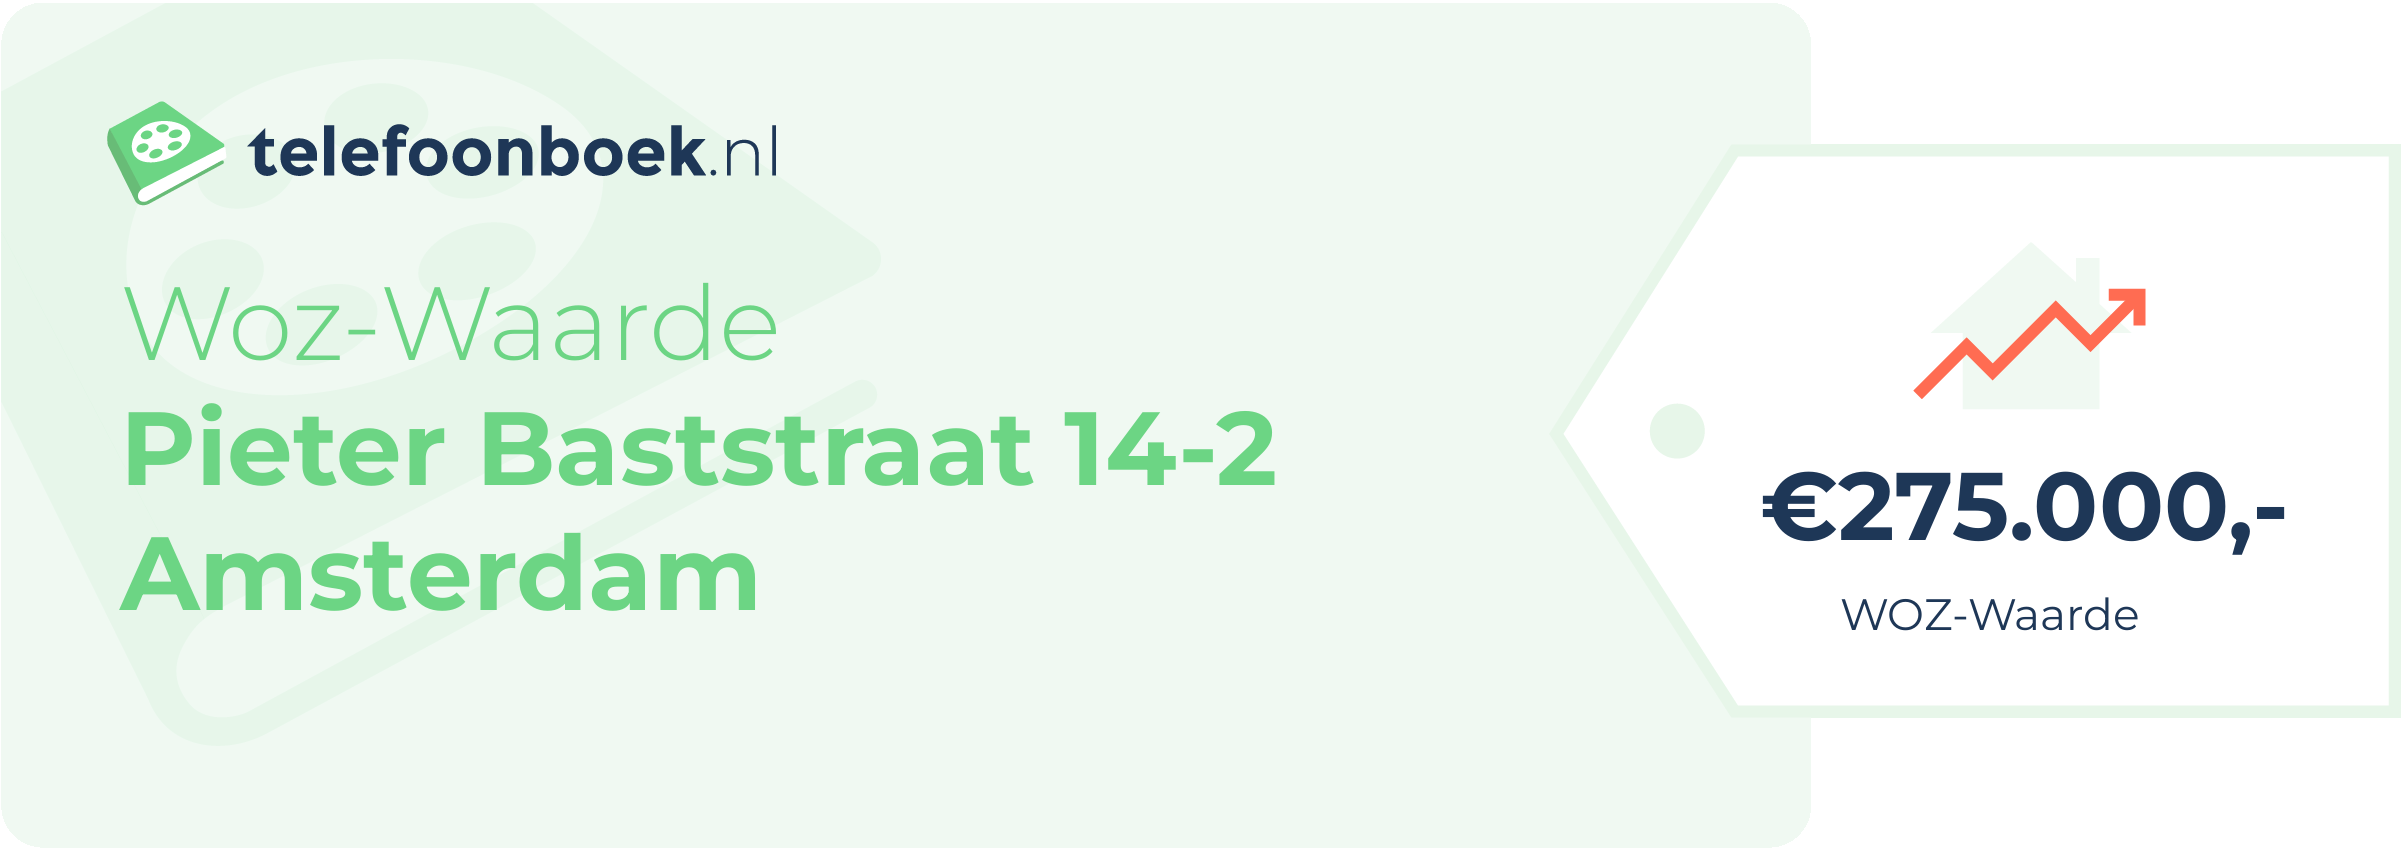 WOZ-waarde Pieter Baststraat 14-2 Amsterdam